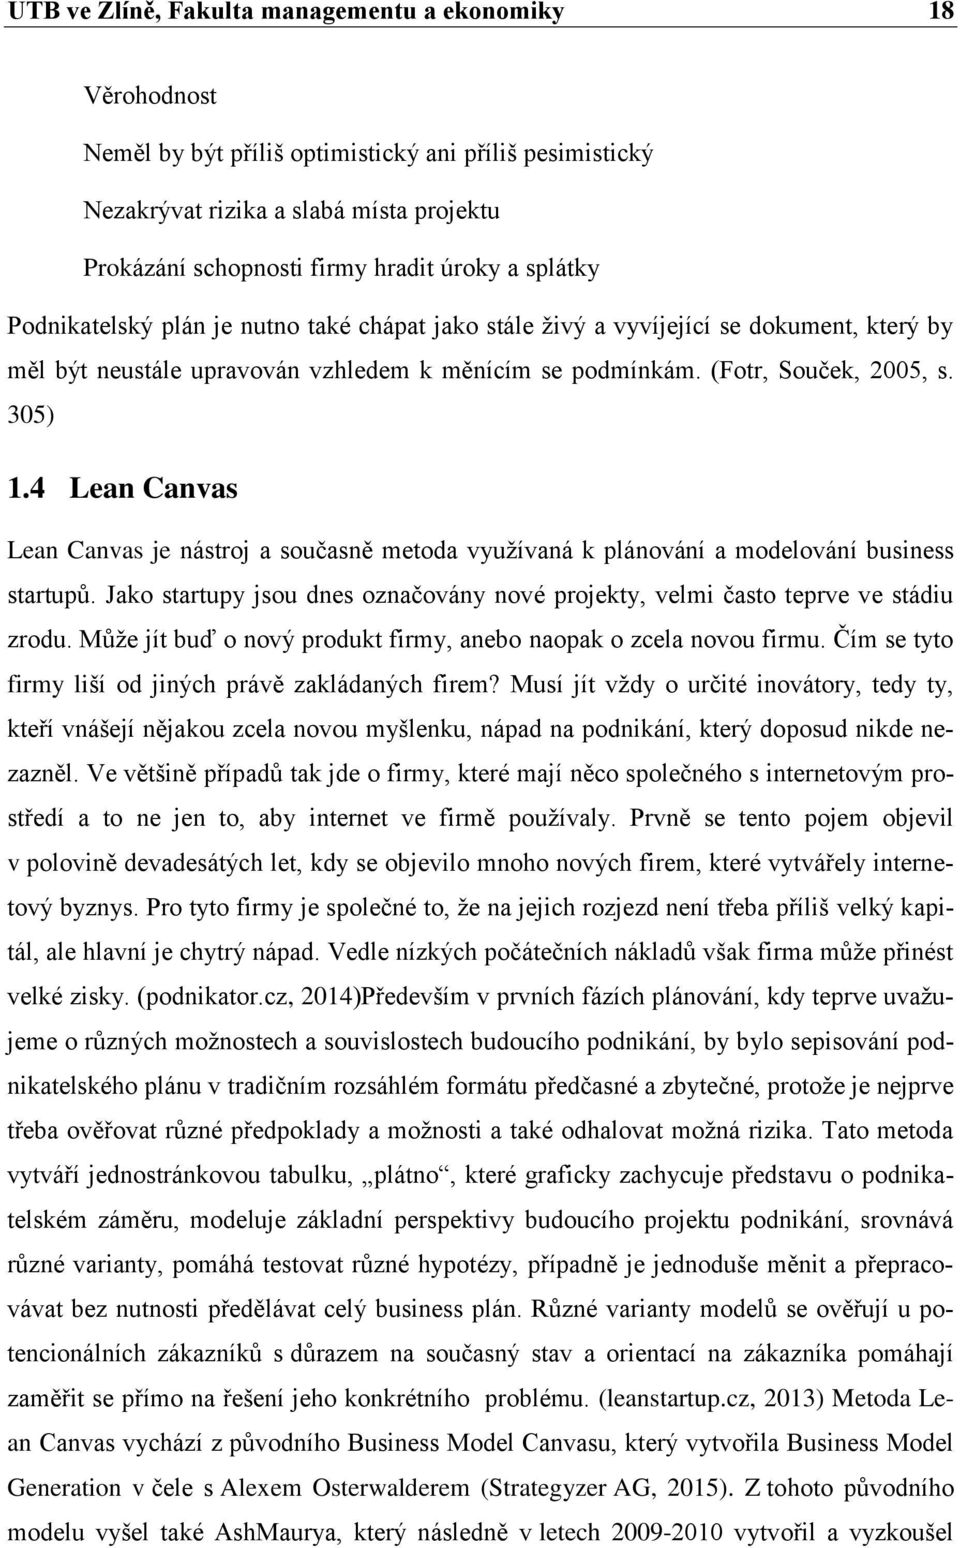 4 Lean Canvas Lean Canvas je nástroj a současně metoda využívaná k plánování a modelování business startupů. Jako startupy jsou dnes označovány nové projekty, velmi často teprve ve stádiu zrodu.